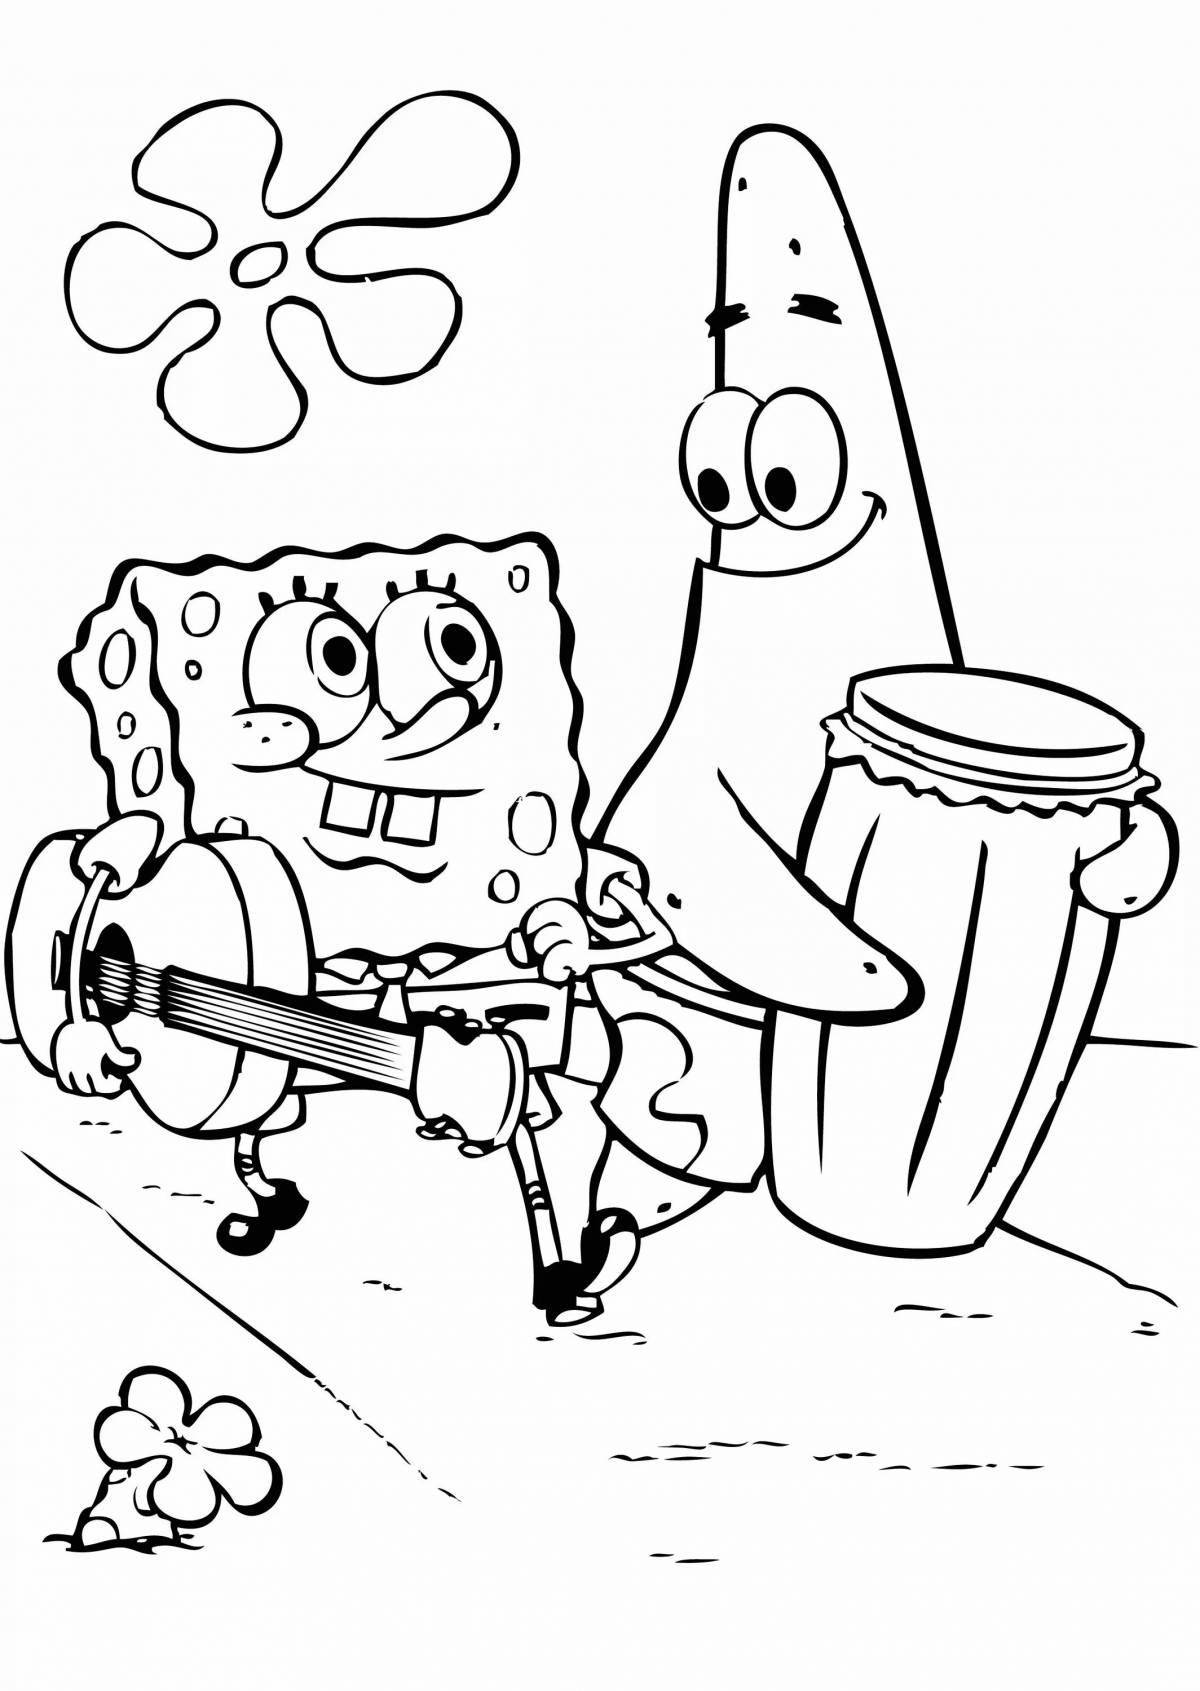 Spongebob and patrick fun coloring book